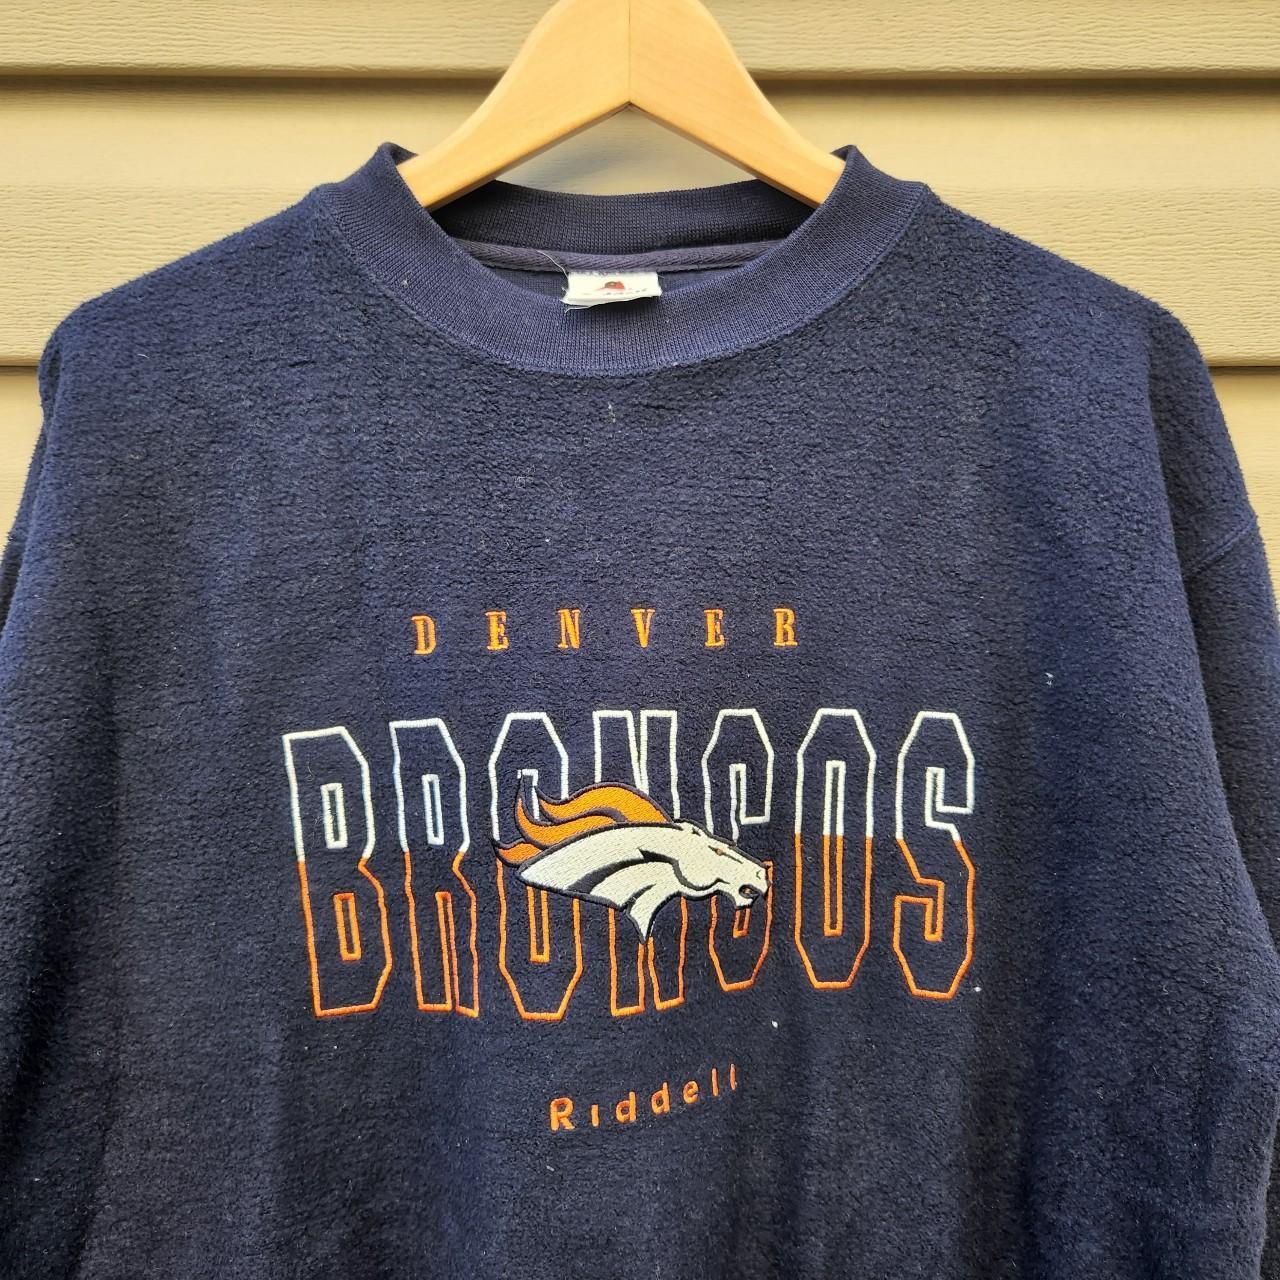 Vintage Retro Denver Broncos Riddell... - Depop